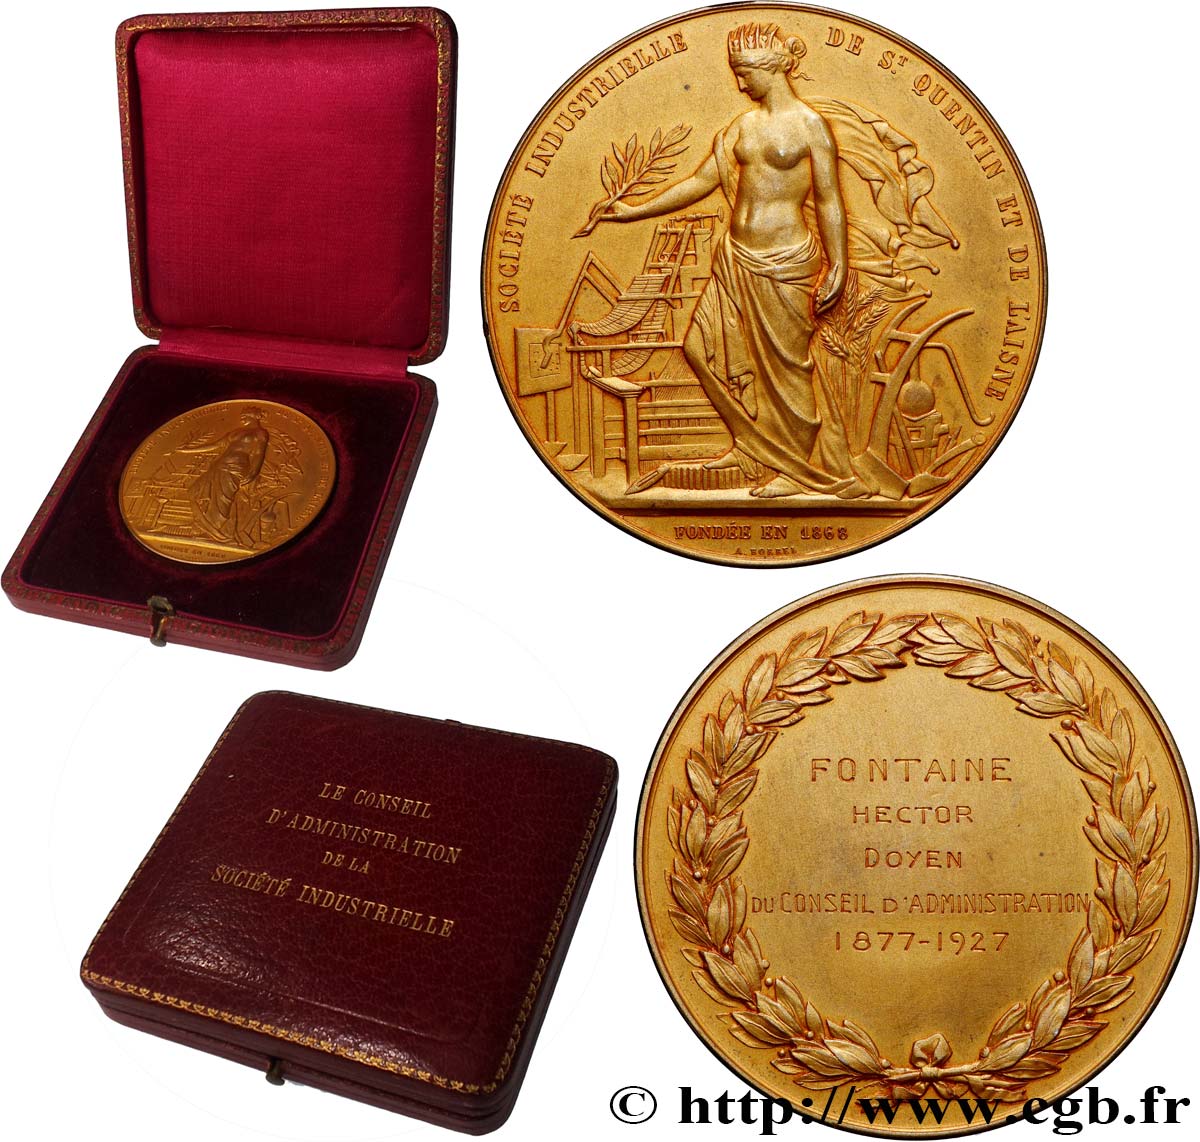 TERZA REPUBBLICA FRANCESE Médaille, Société industrielle de St Quentin et de l’Aisne, Conseil d’administration SPL